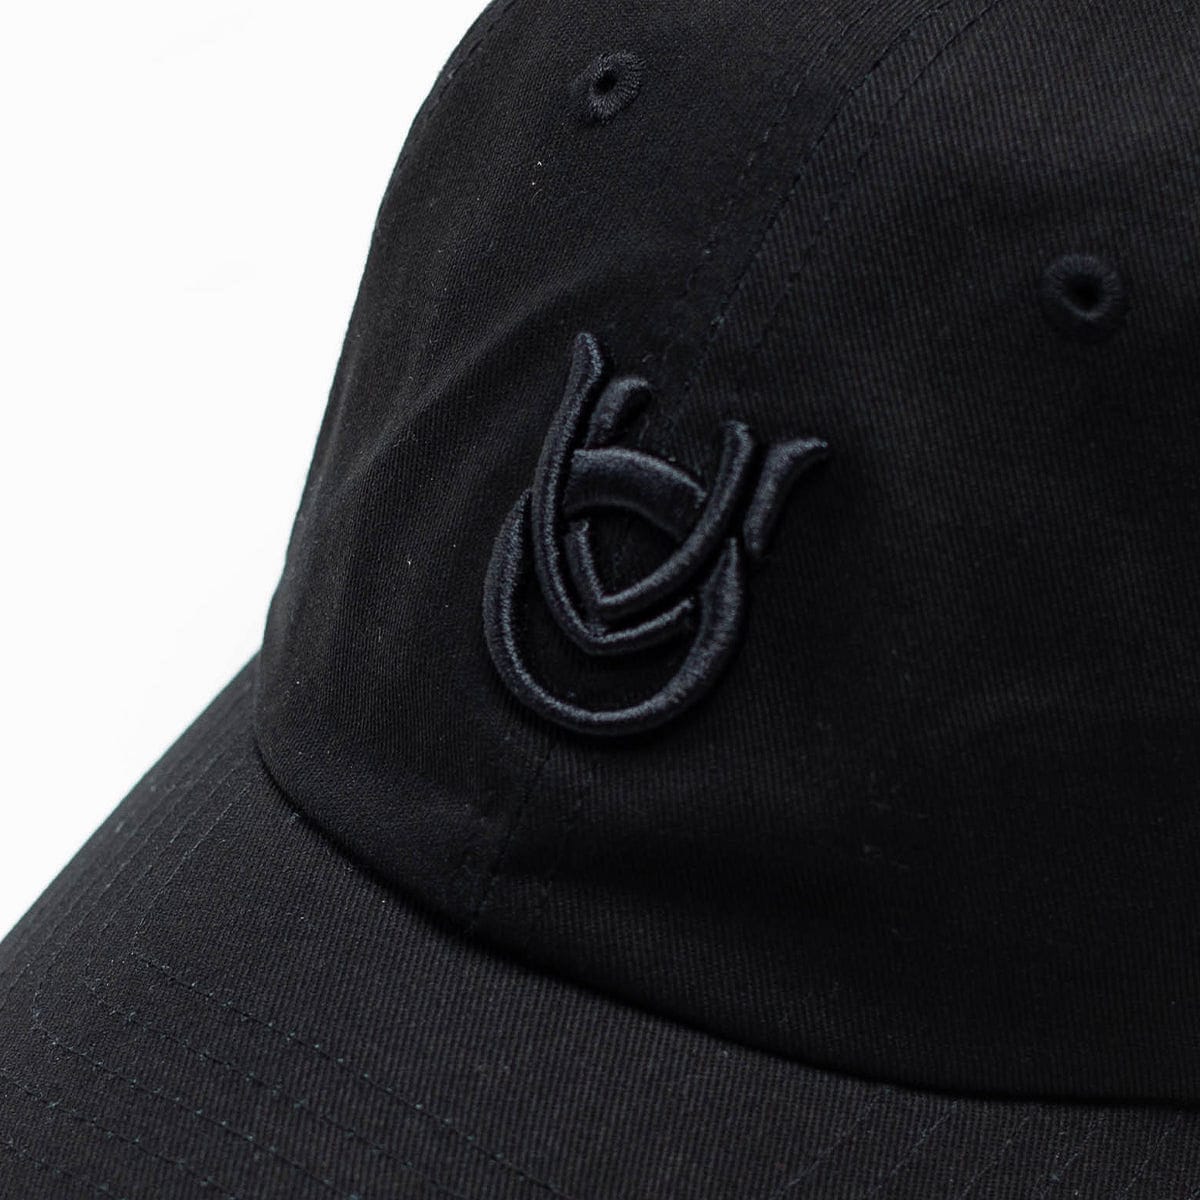 AEGIS LOW CAP BLACK 老帽